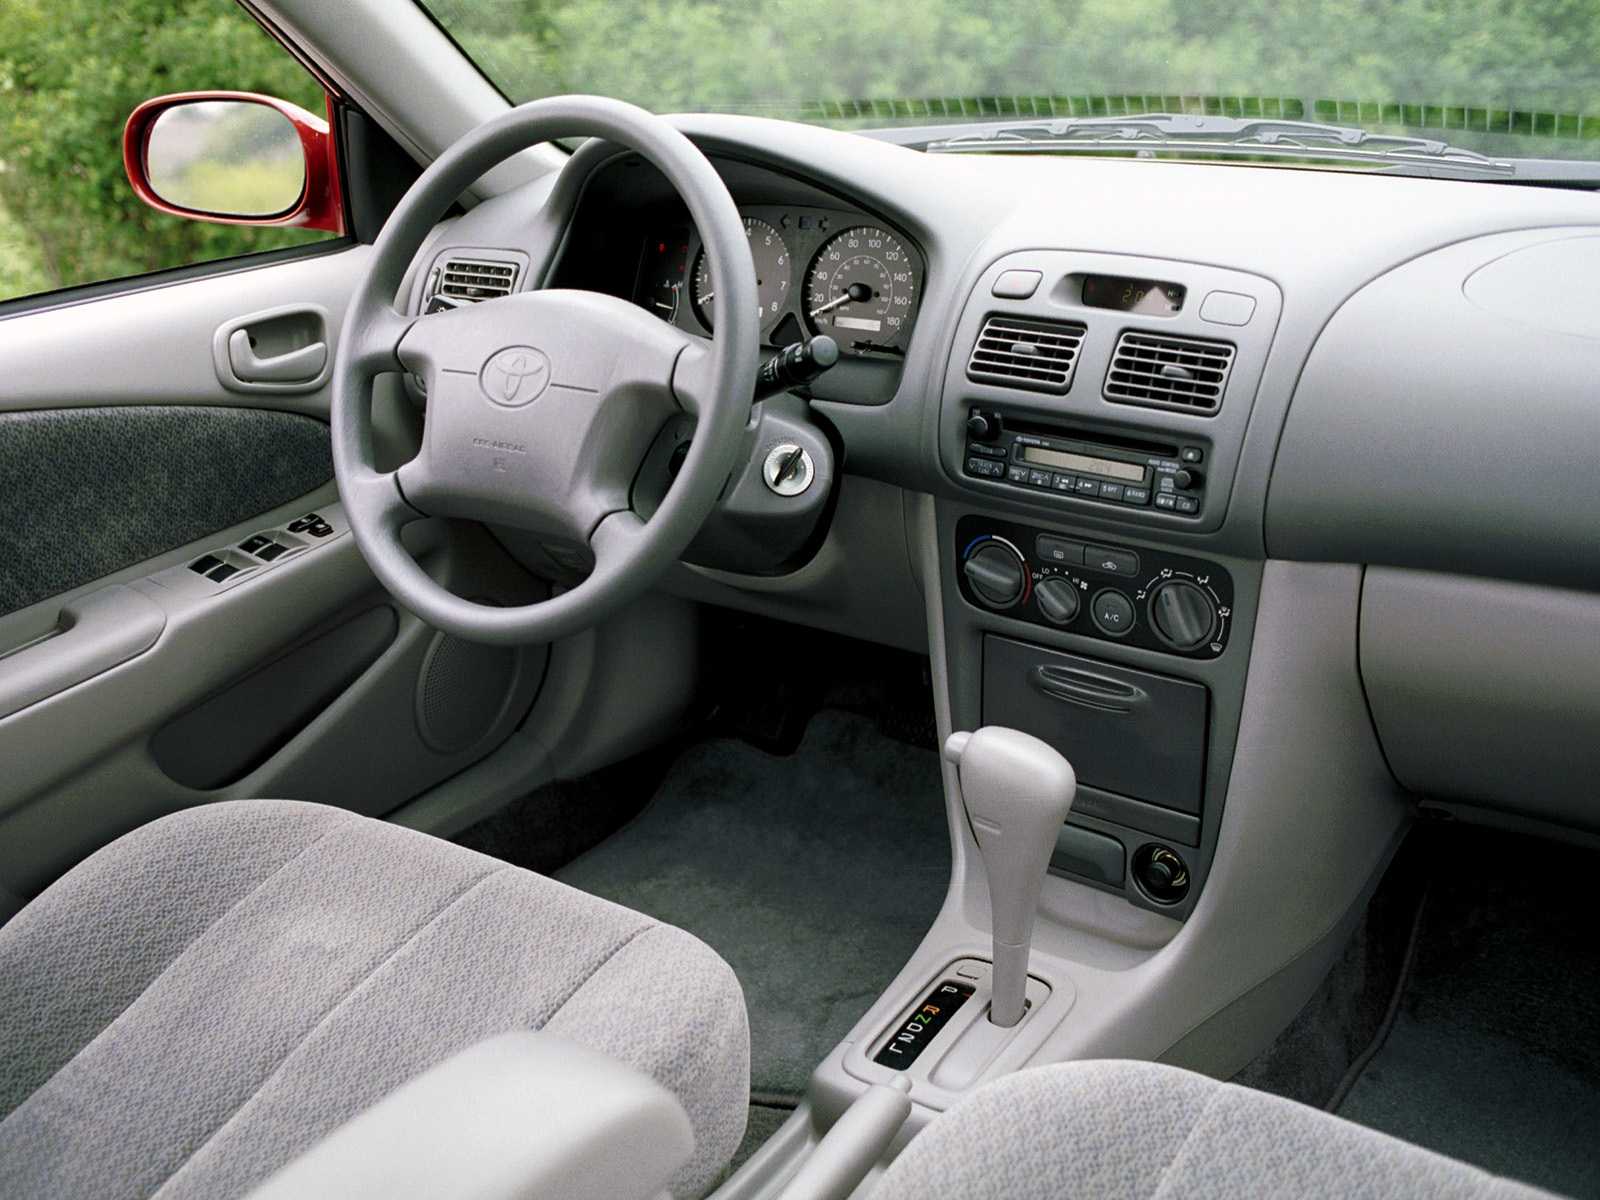 Toyota corolla e180 (11 поколение) – слабые места, надежность